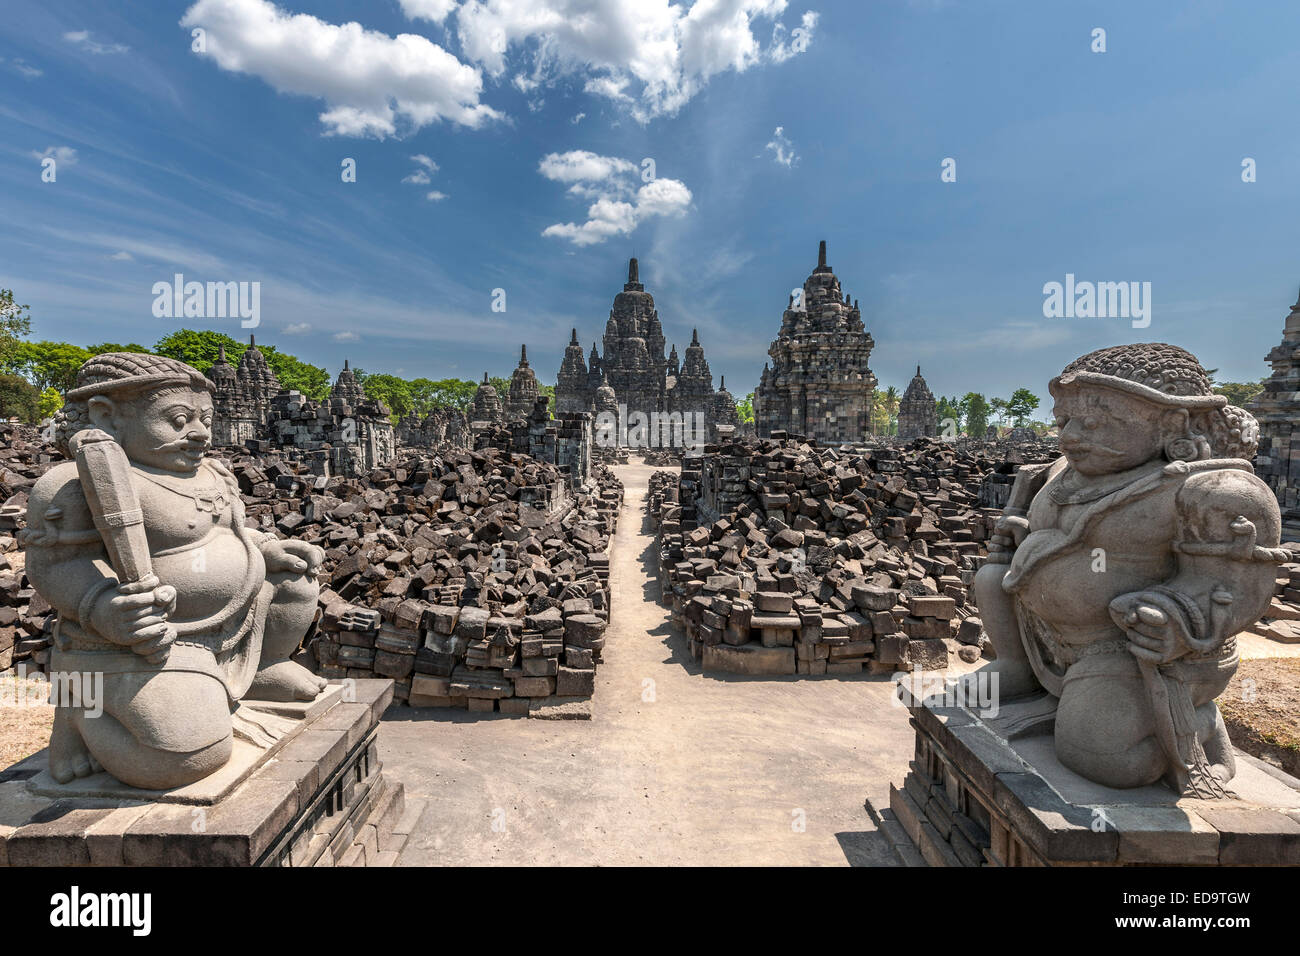 Candi Sewu, Teil des Prambanan Tempel-Komplex, ein 9. Jahrhundert Hindu-Tempel in der Nähe von Yogyakarta in Zentraljava, Indonesien. Stockfoto